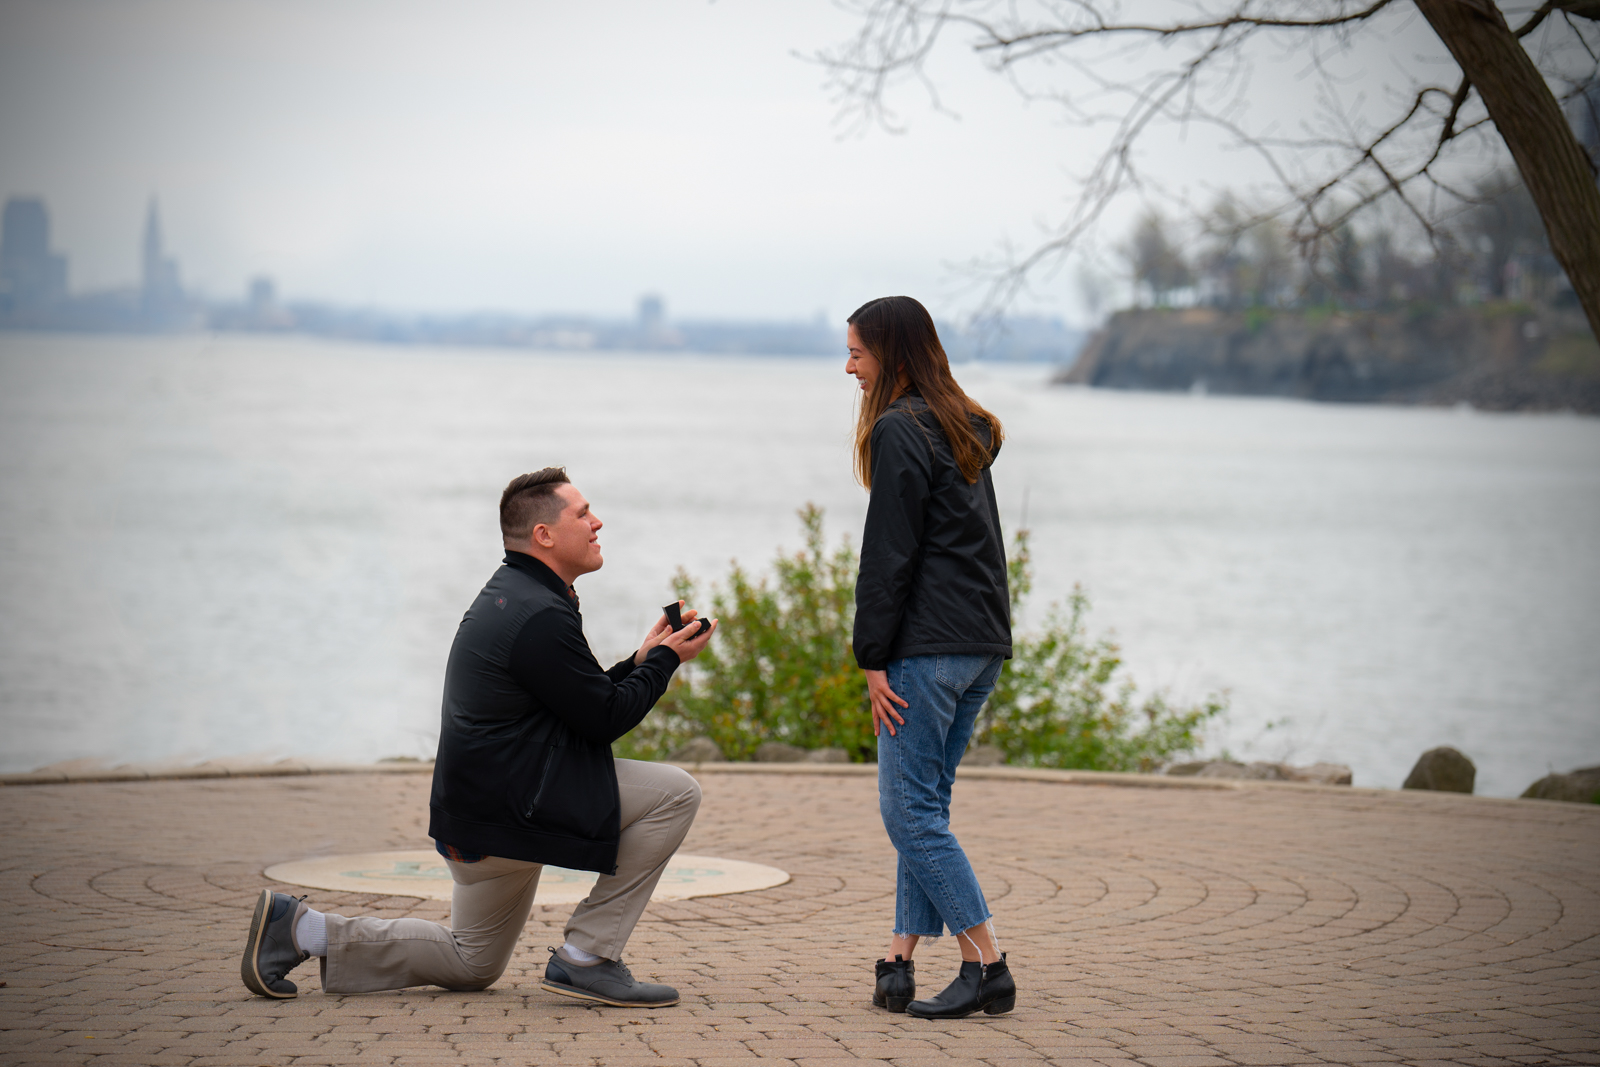 John + Libby Proposal at Lakewood Park